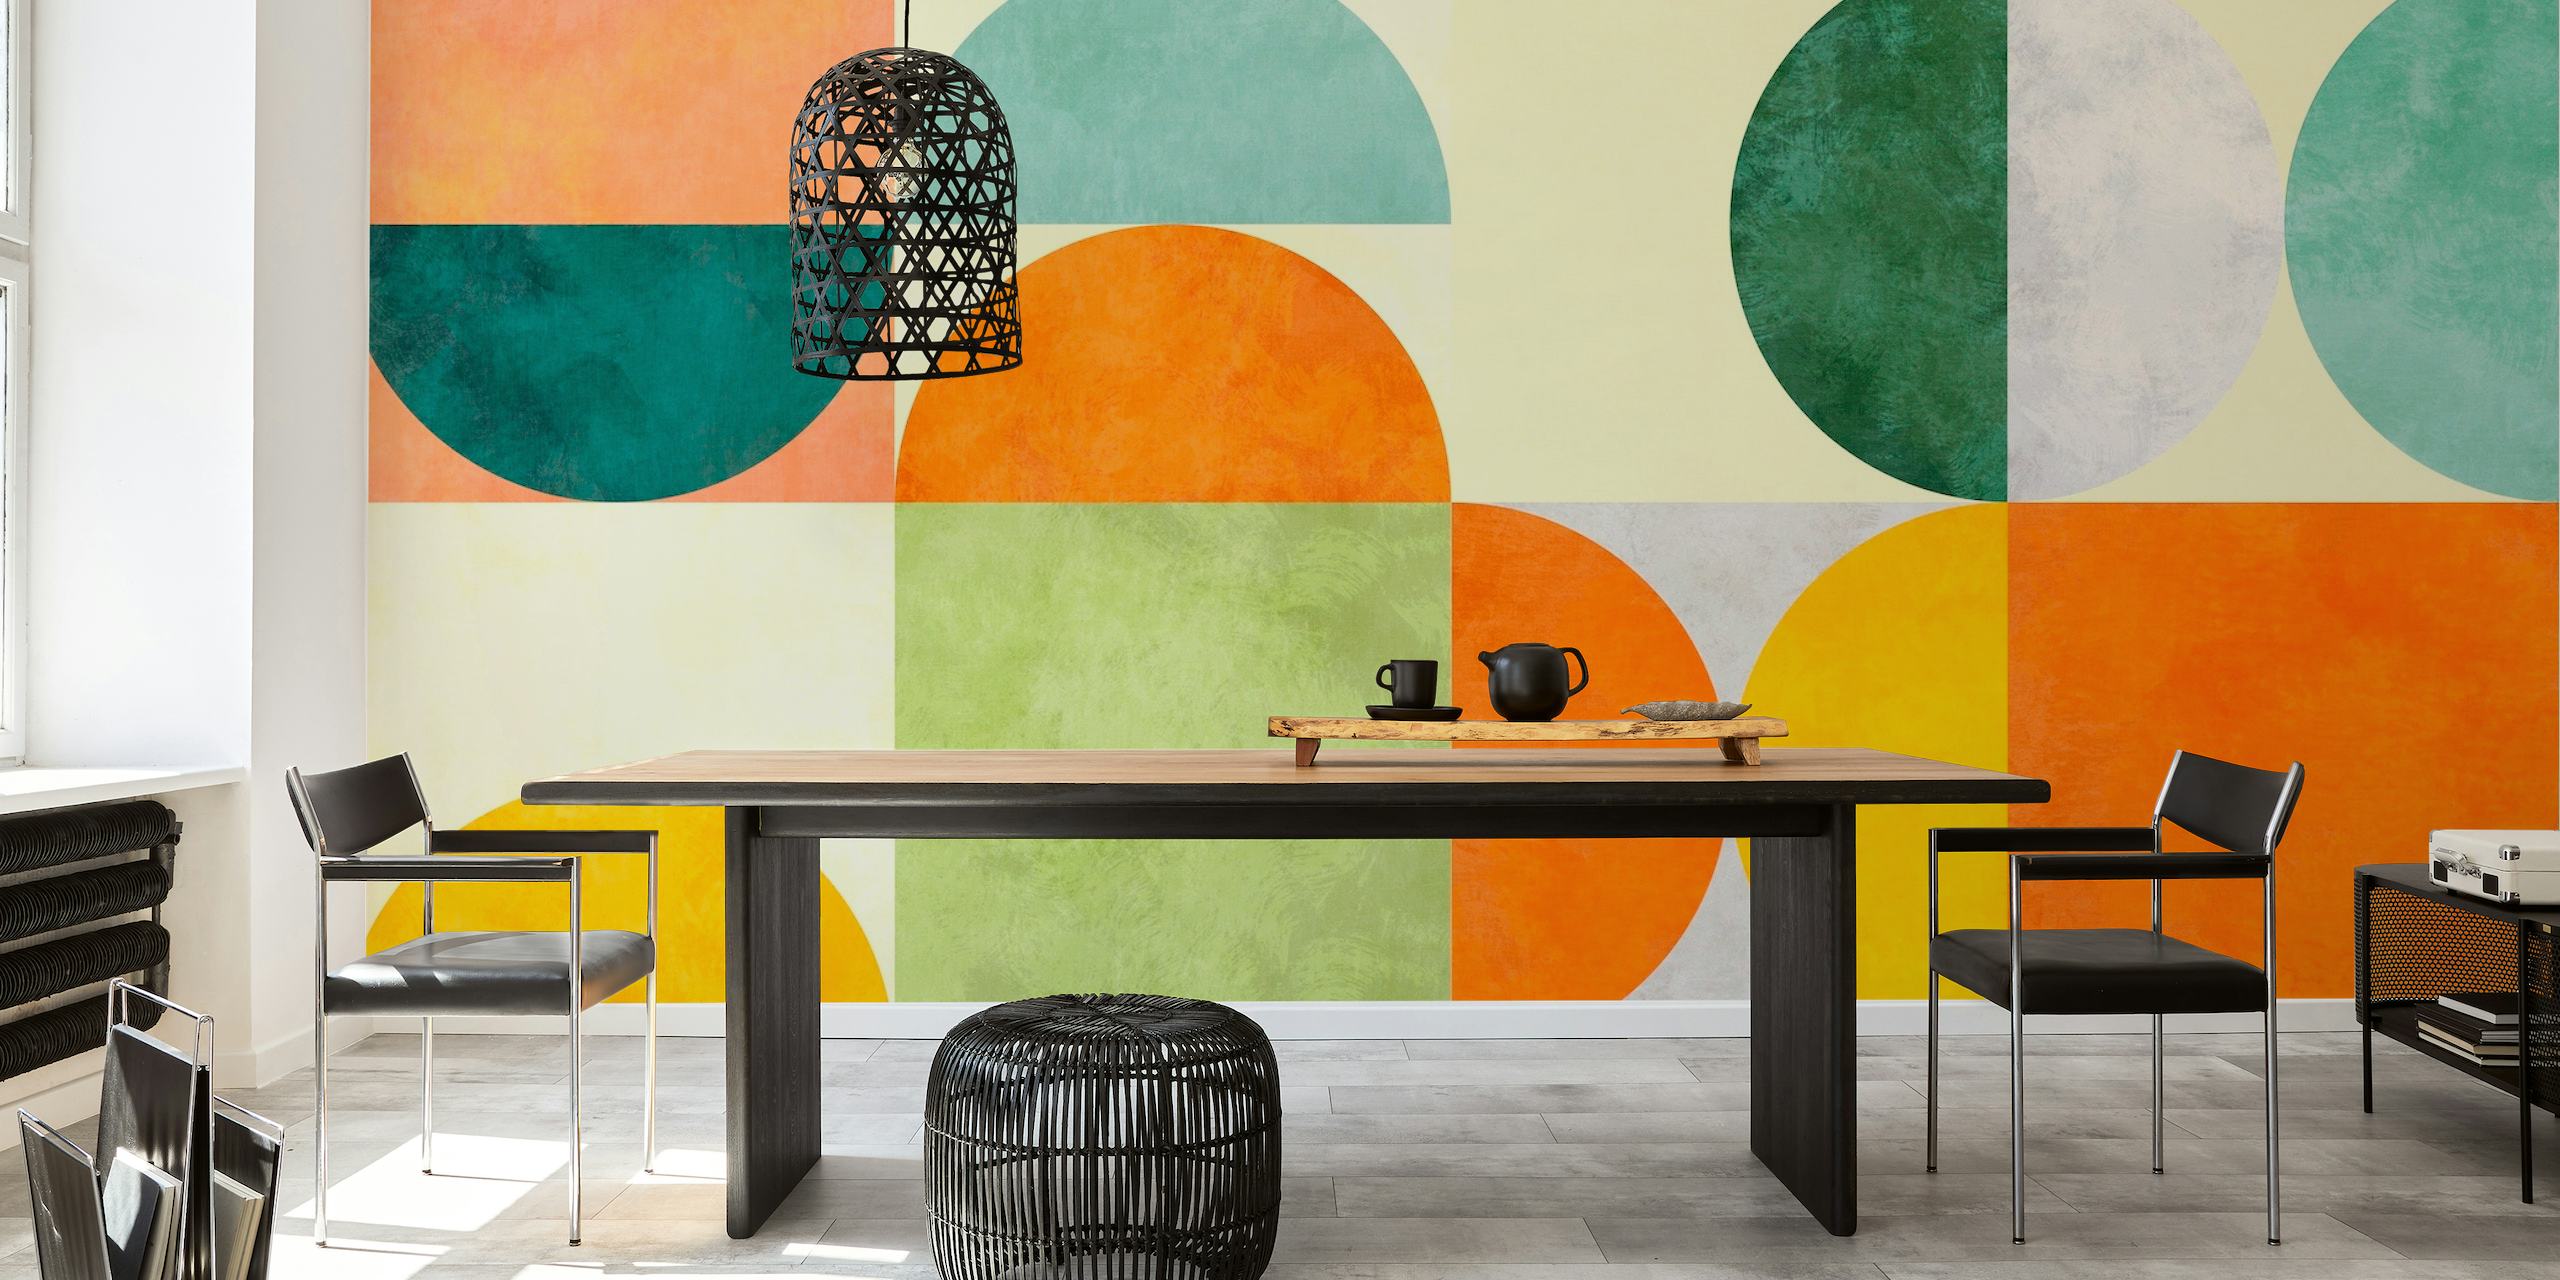 Bauhaus Retro Geometry 2 muurschildering met minimalistische vormen in pastelkleuren